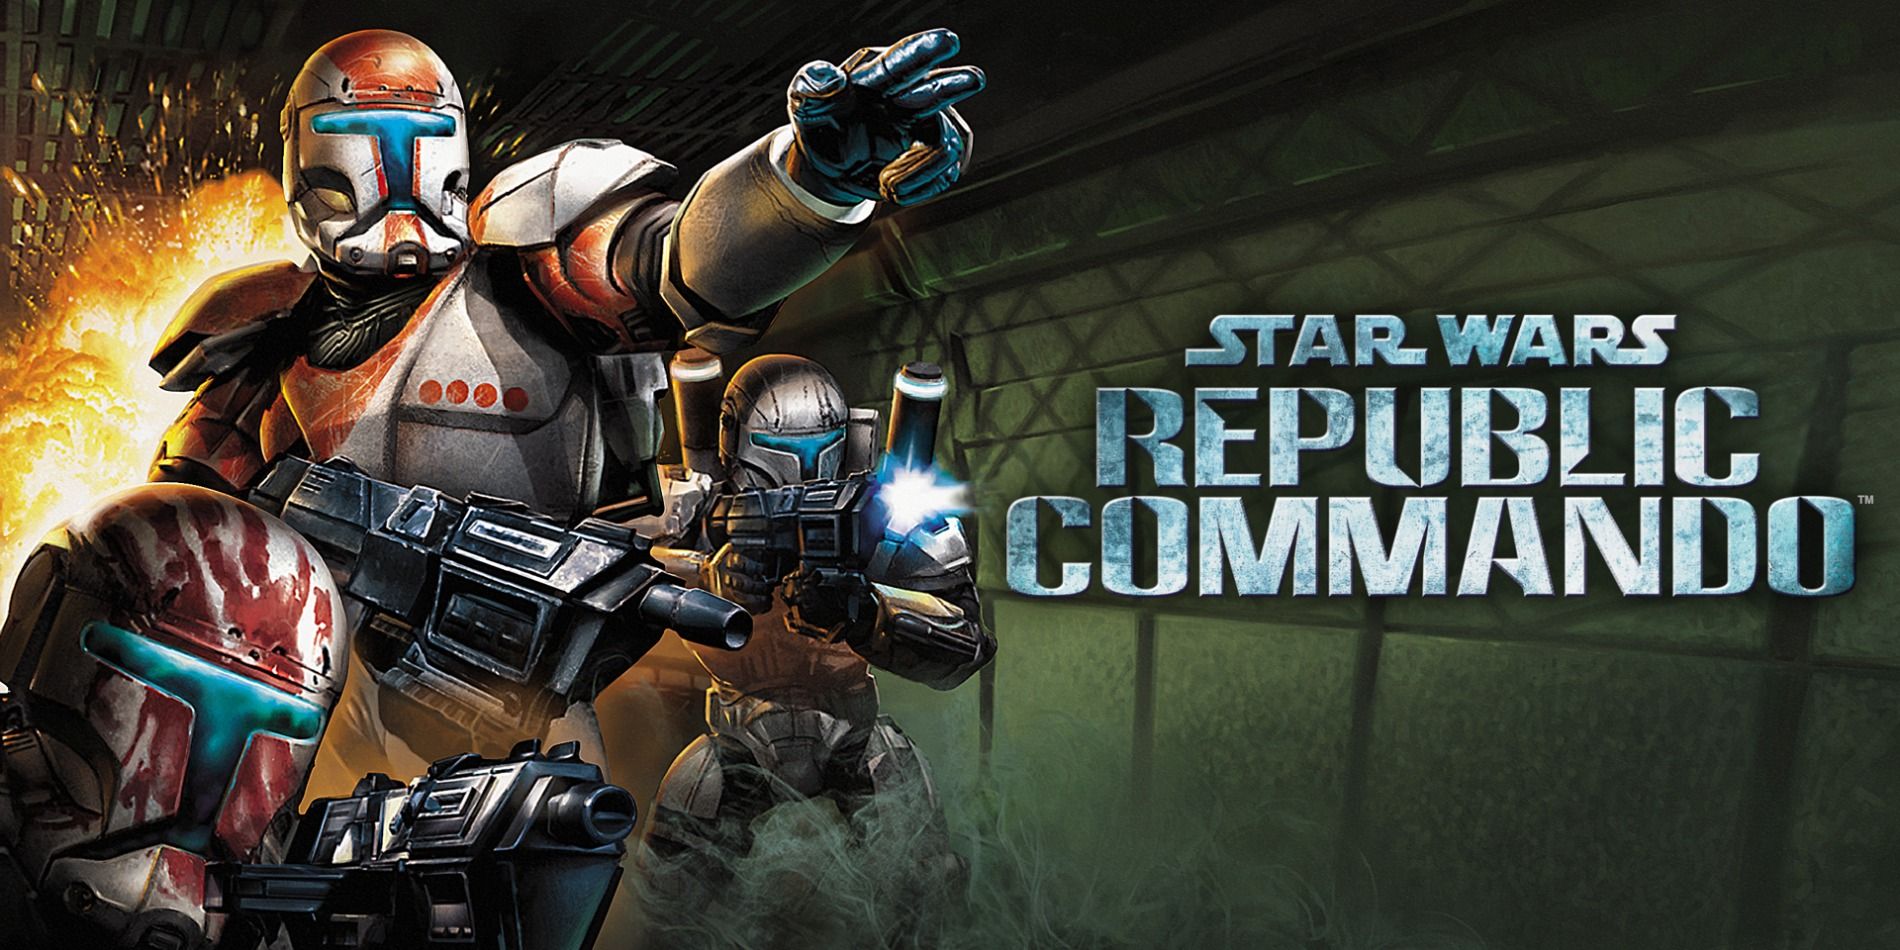 Promo art for Star Wars: Republic Commando